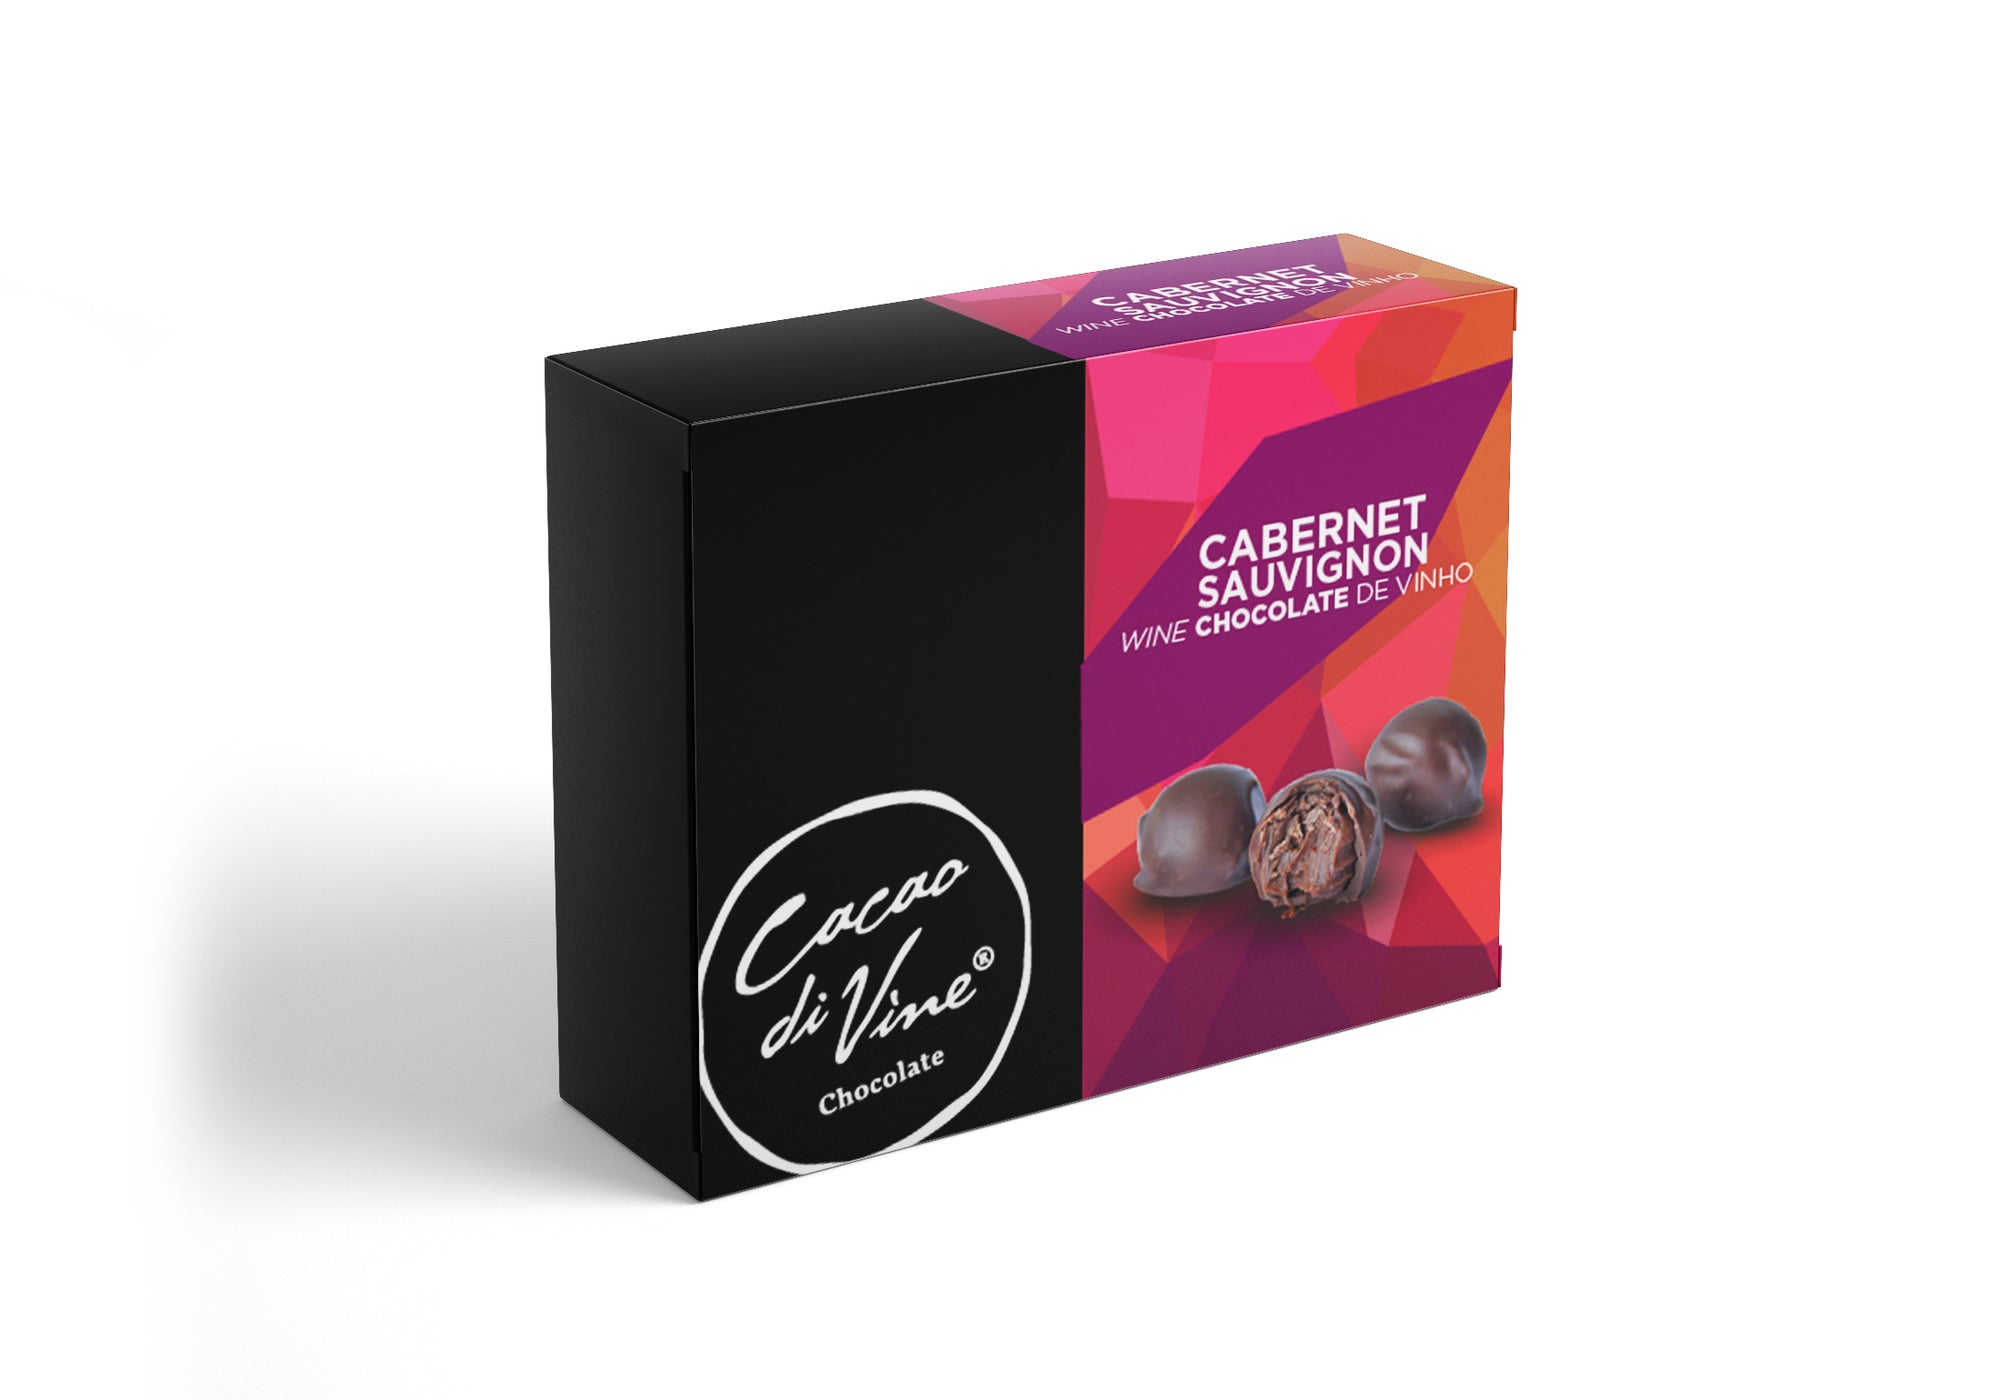 Wine Box - Chocolate de Cabernet Sauvignon Cacao di Vine